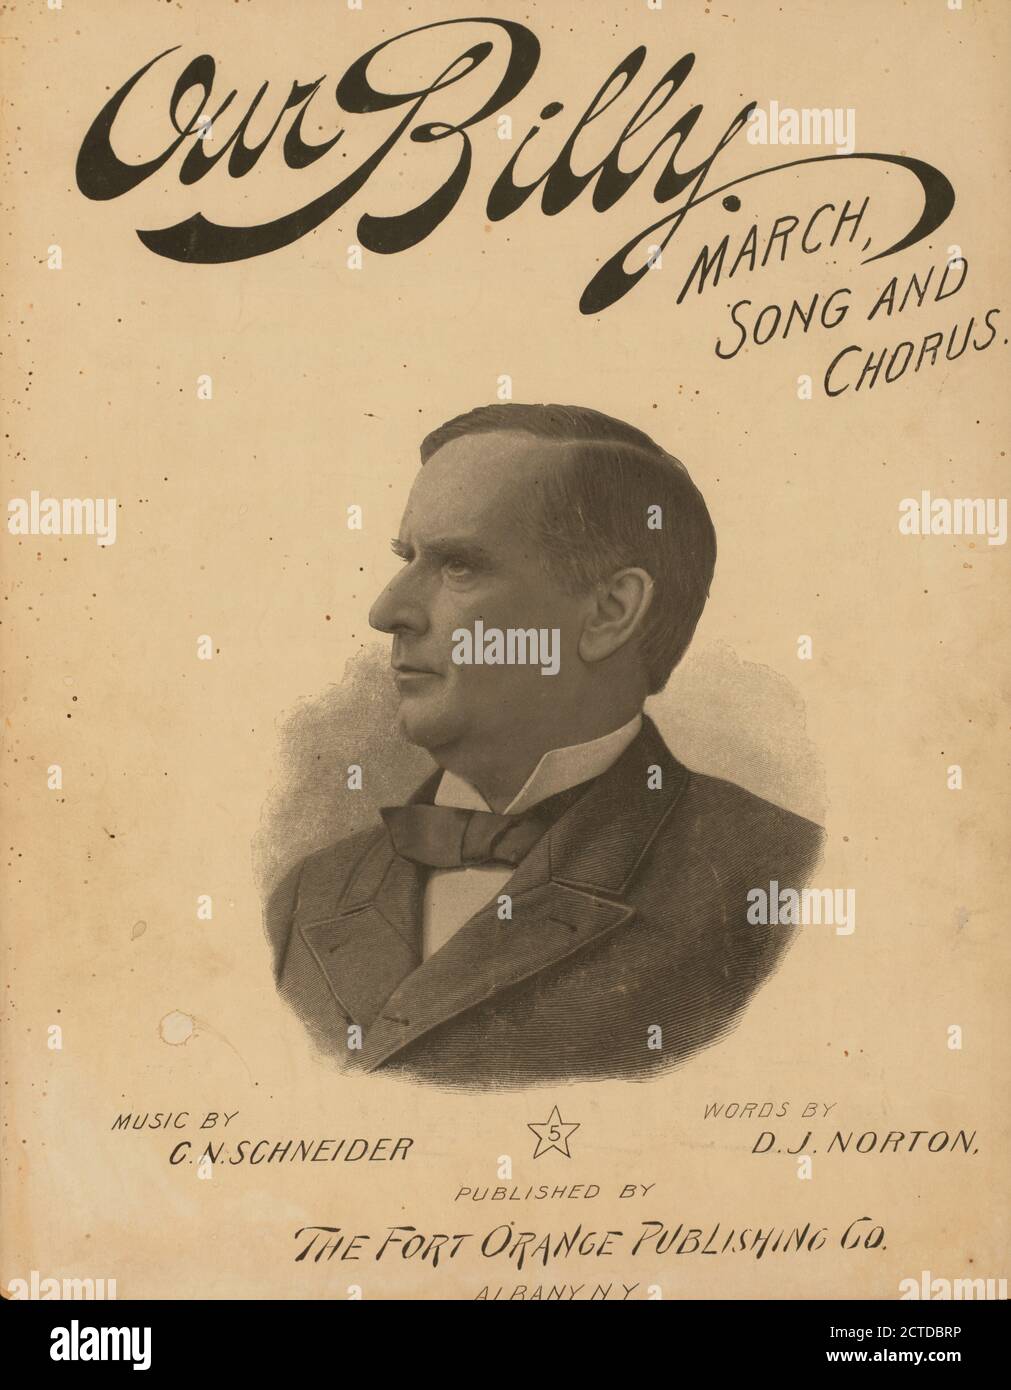 Unser Billy : marschsong und Chor, Standbild, Noten, 1896, Schneider, C. N., Norton, D. J Stockfoto